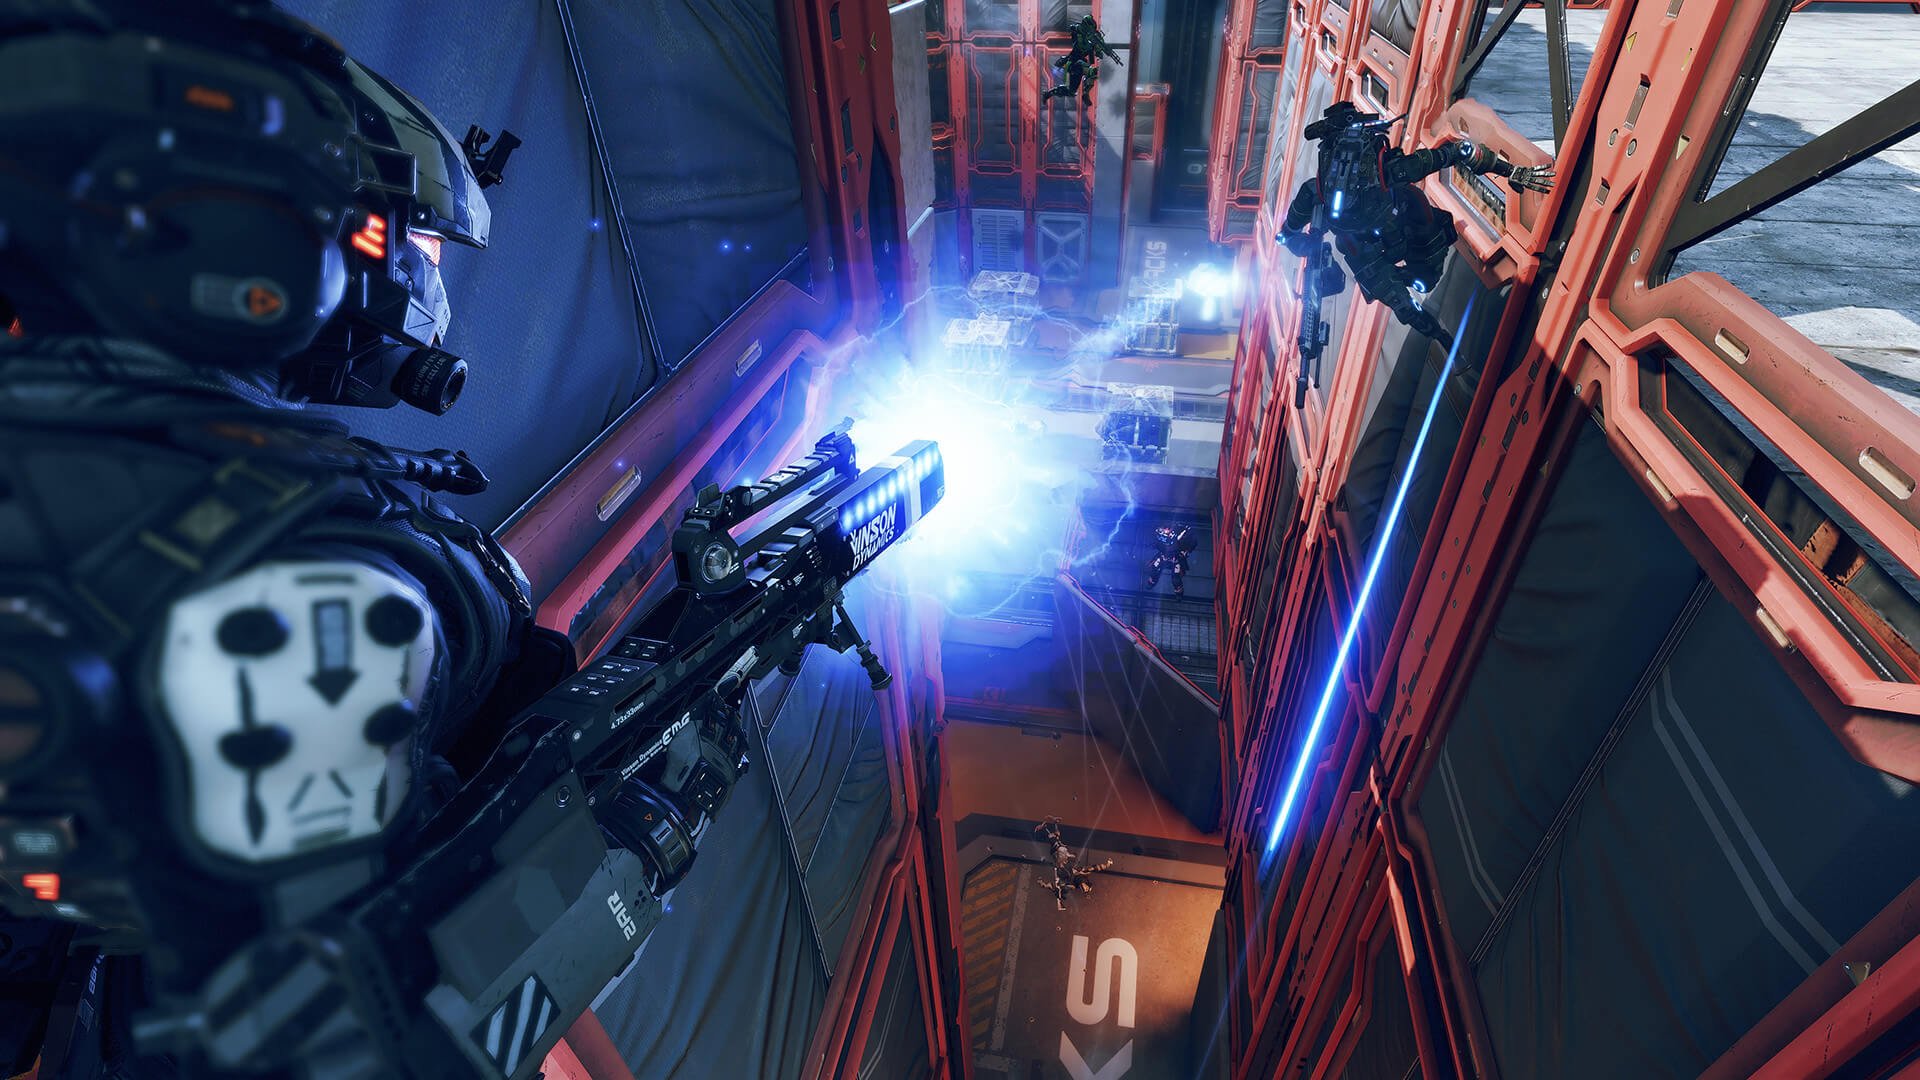 A shot of a player firing a gun in Titanfall 2